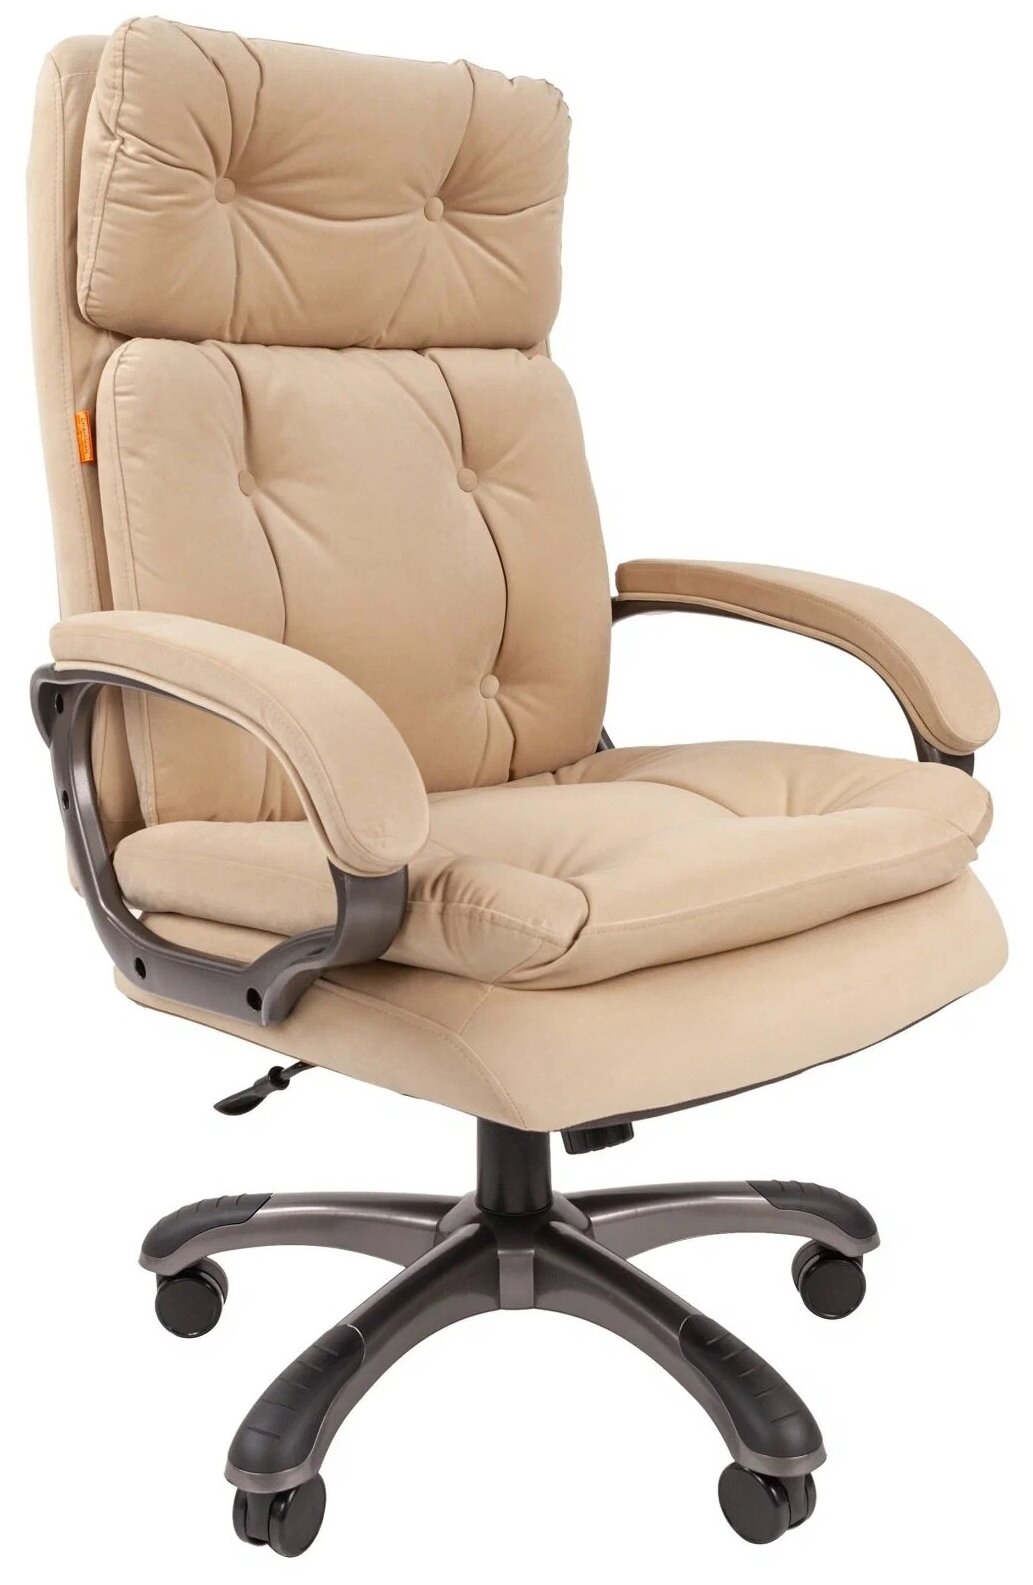 Компьютерное кресло Chairman 442 для руководителя, обивка: текстиль, цвет: бежевый